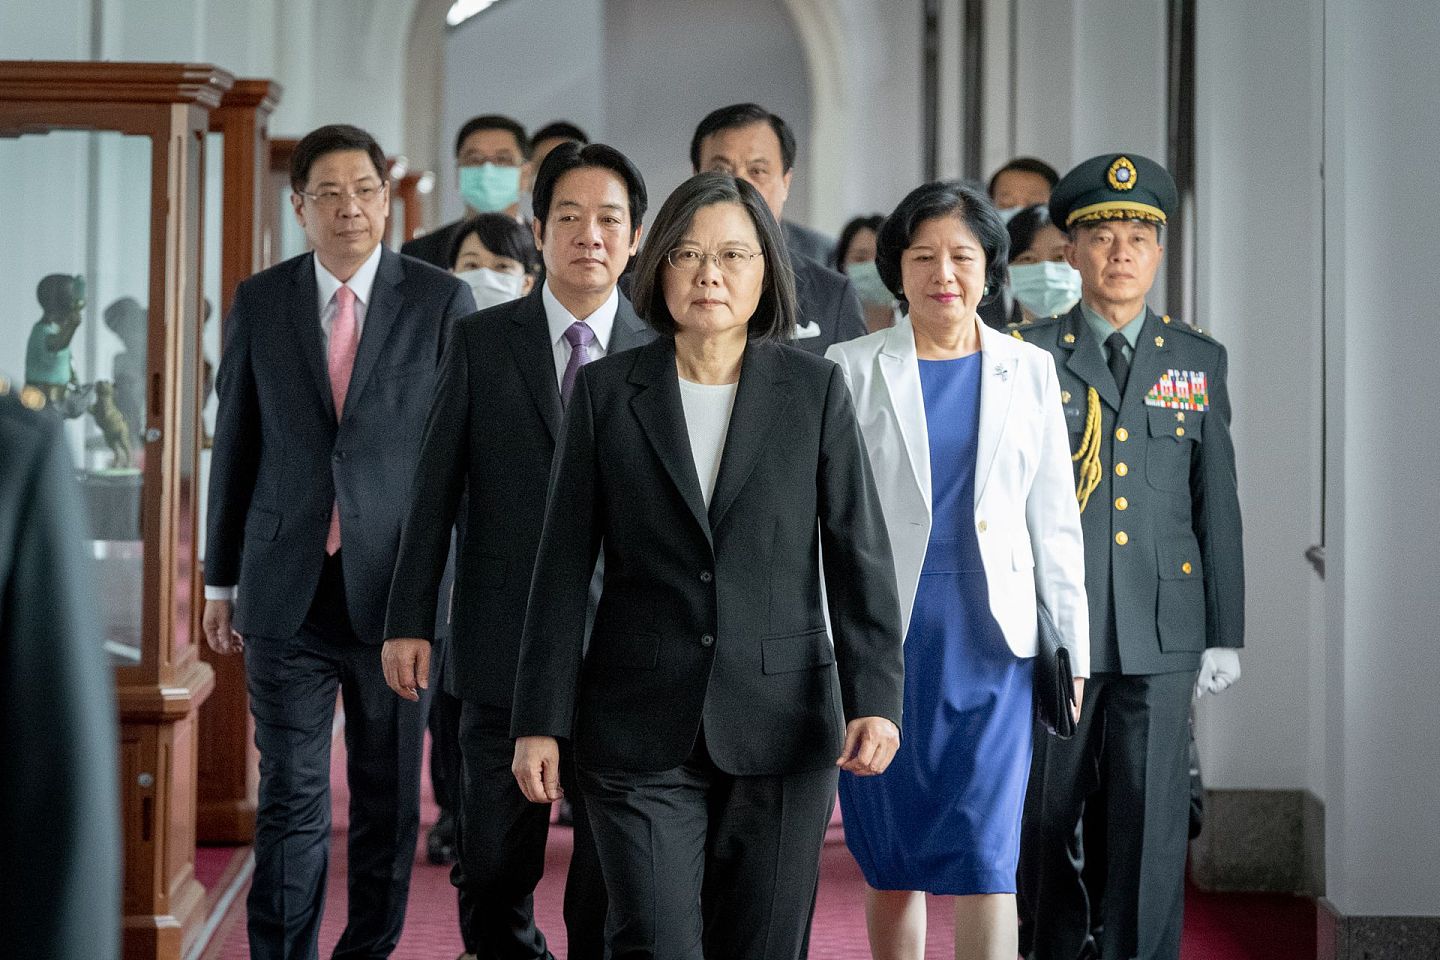 2020年5月20日，台湾总统蔡英文参加就职仪式，演说中再次重申“和平、对等、民主、对话”，为其执政下的两岸关系定调。强调，台湾不会接受北京当局以“一国两制”矮化台湾，破坏台海的现状。（台湾总统府）